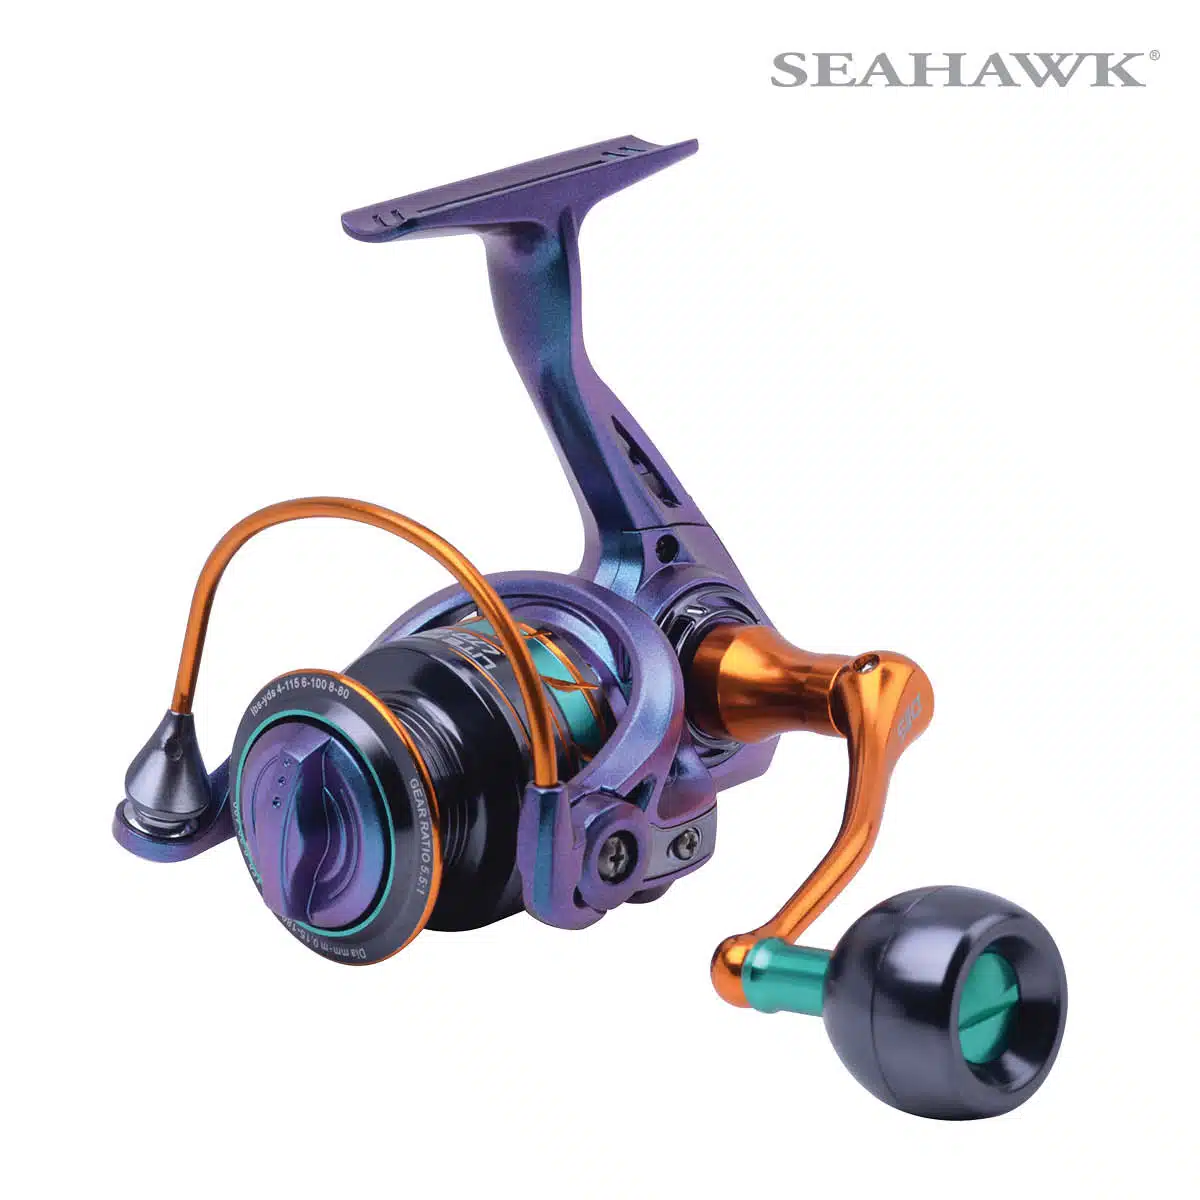 Seahawk Fishing Malaysia  Lite Pro LTD Ultralight Reel